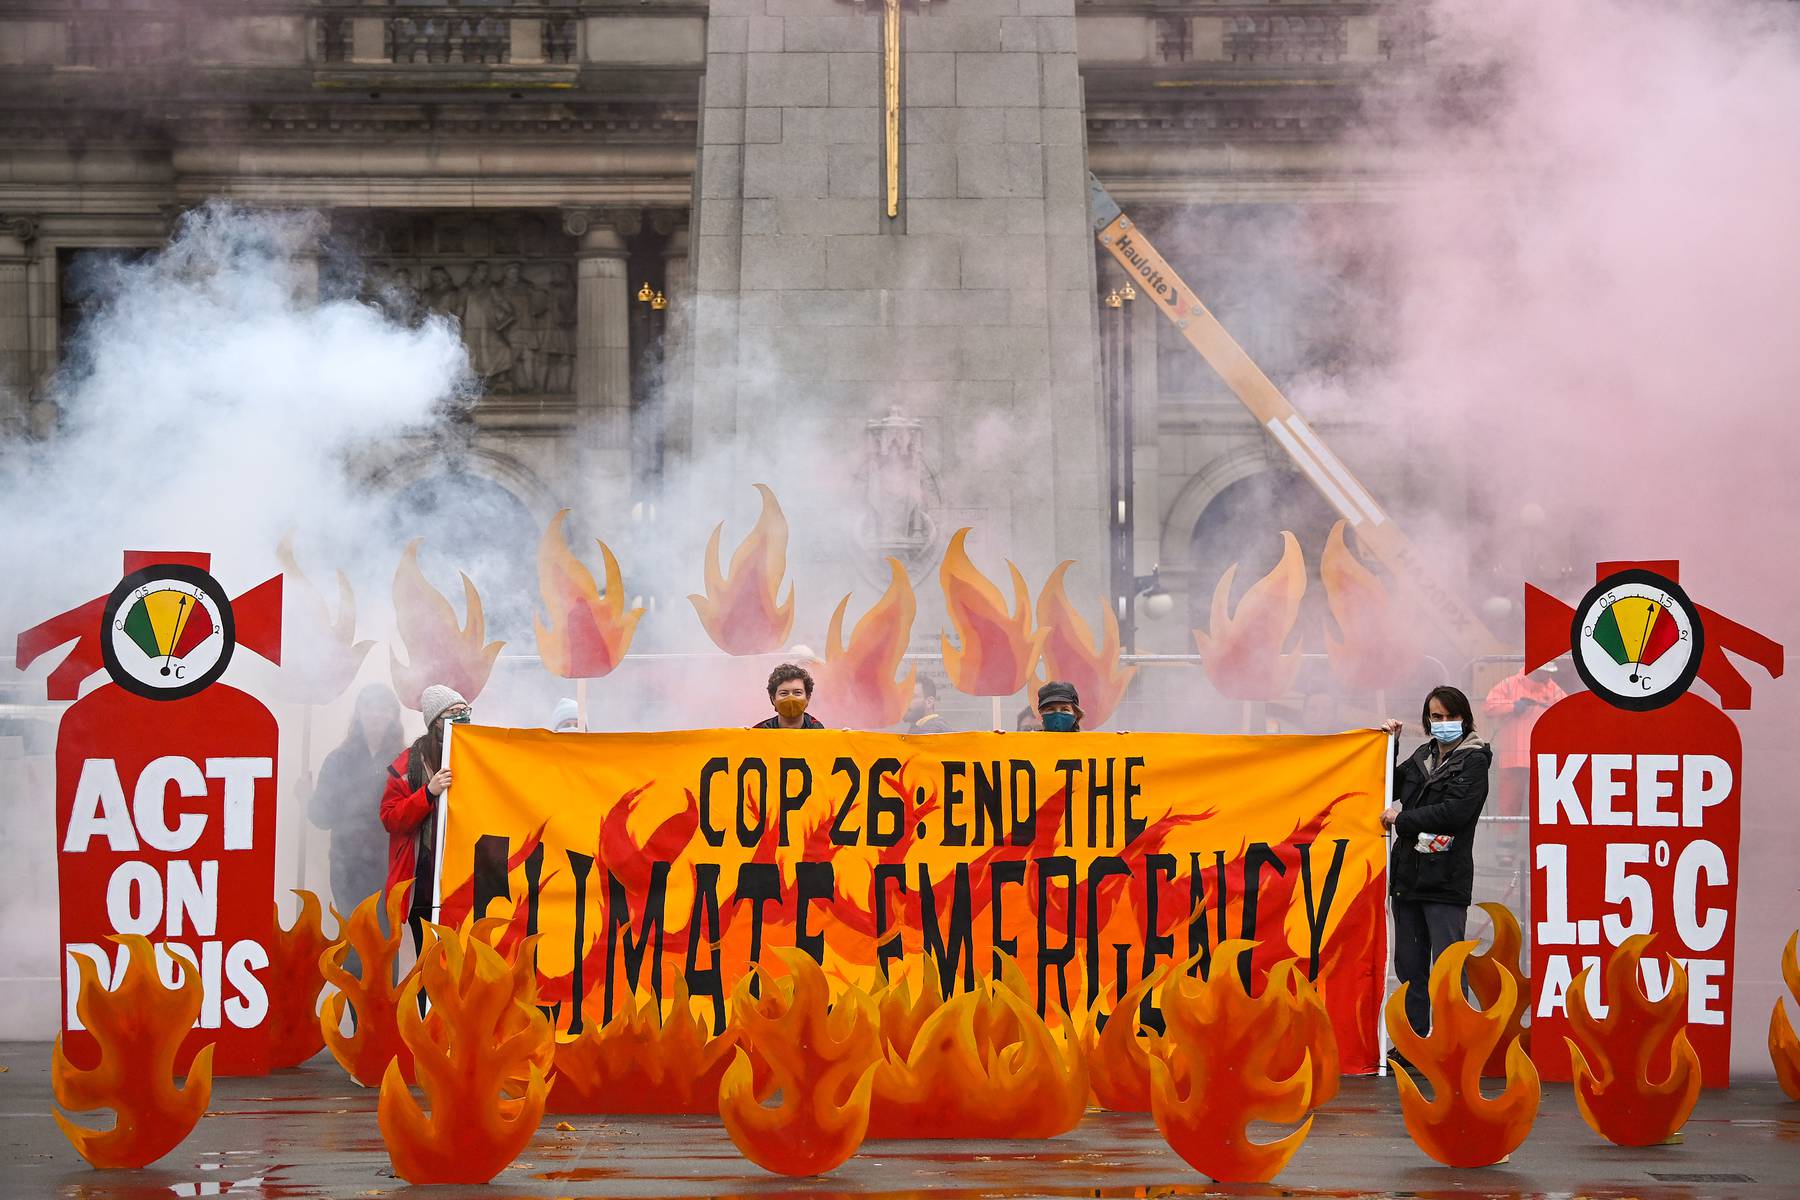 活动人士将在苏格兰格拉斯哥的乔治广场用气候篝火欢迎世界各国领导人参加COP26。该组织象征性地用人造火焰、烟雾和横幅的艺术装置“点燃”了乔治广场，展示了气候紧急情况，以及大型灭火器，强调世界各国领导人在即将到来的COP26气候谈判中应该采取的行动。